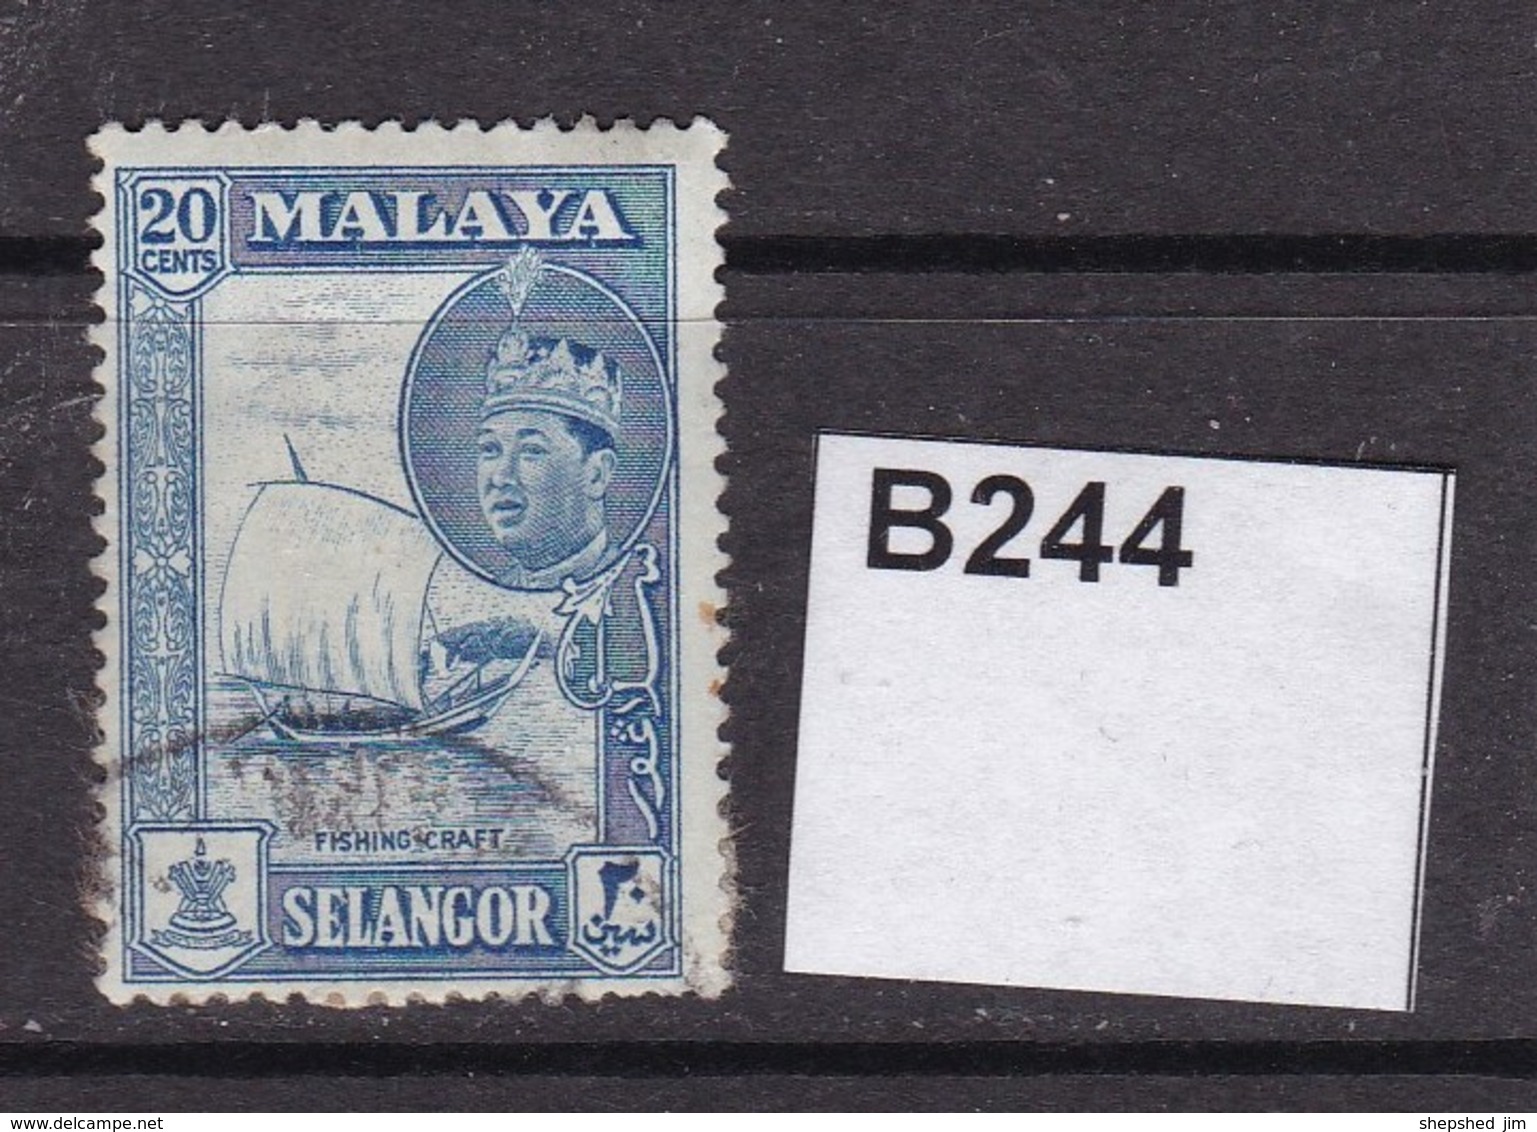 Selangor 1961 20c - Selangor